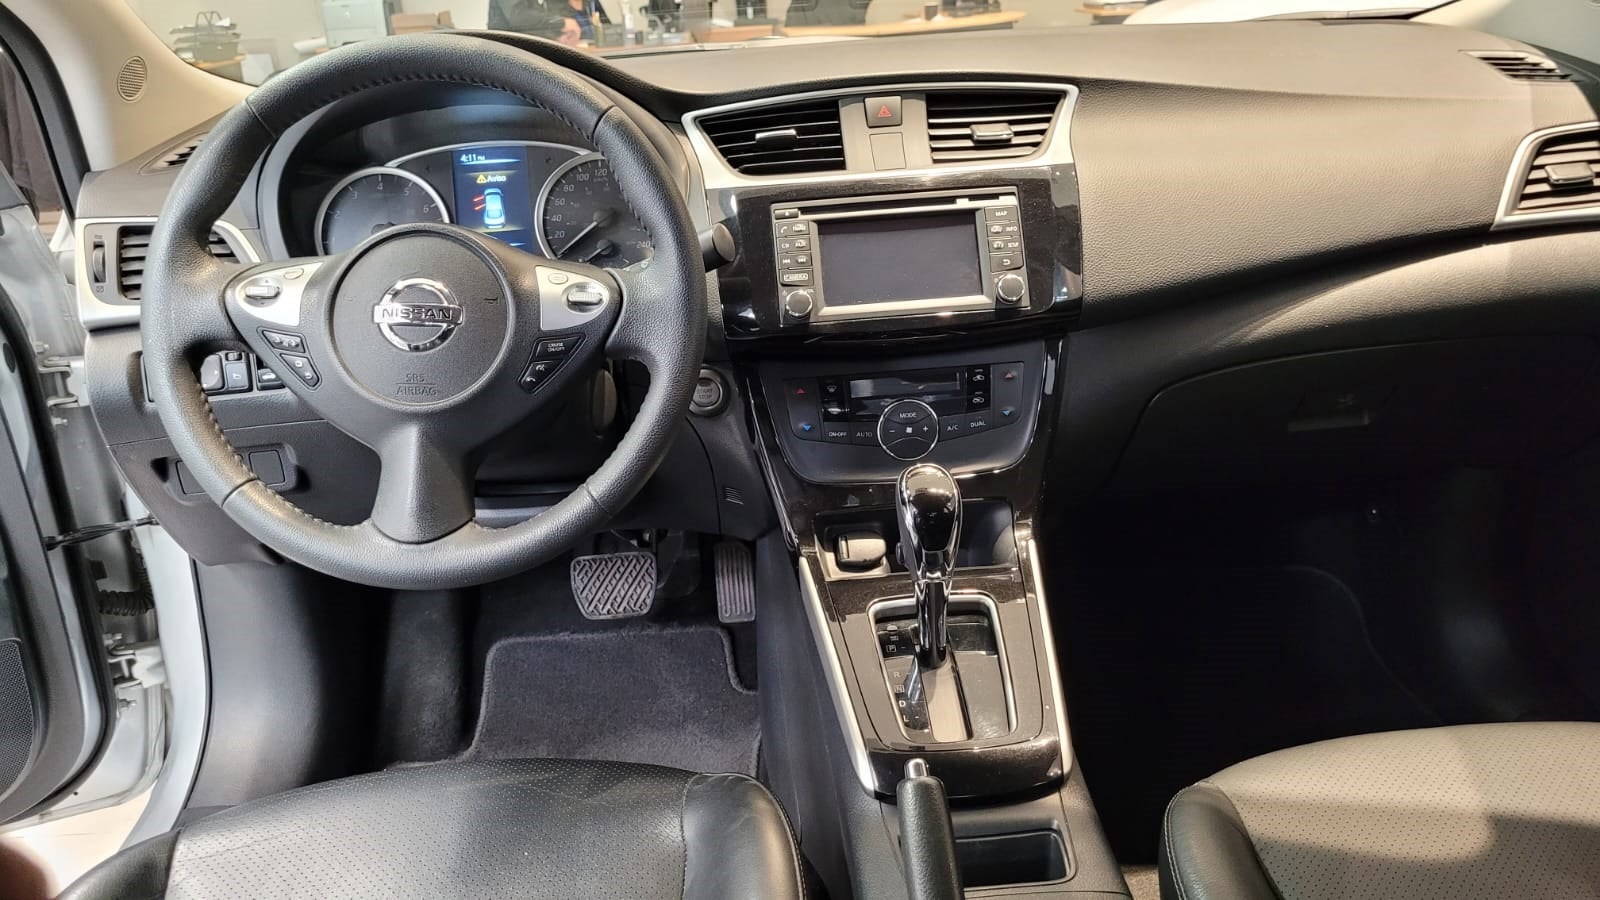 2018 Nissan SENTRA EXCLUSIVE L4 1.8L 129 CP 4 PUERTAS AUT PIEL BA AA QC